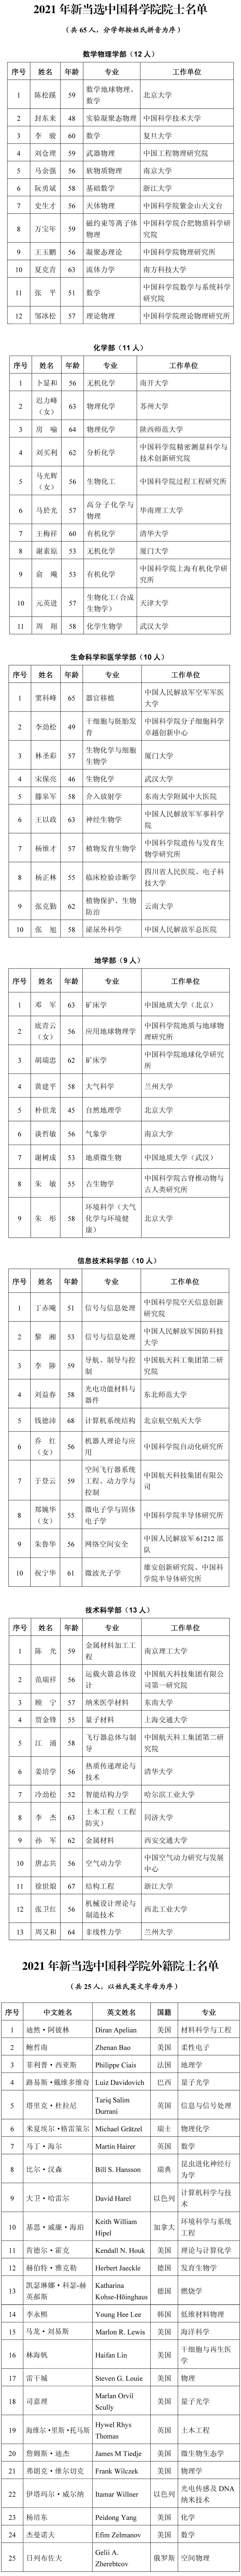 中国科学院2021年院士增选名单揭晓最小年龄45岁